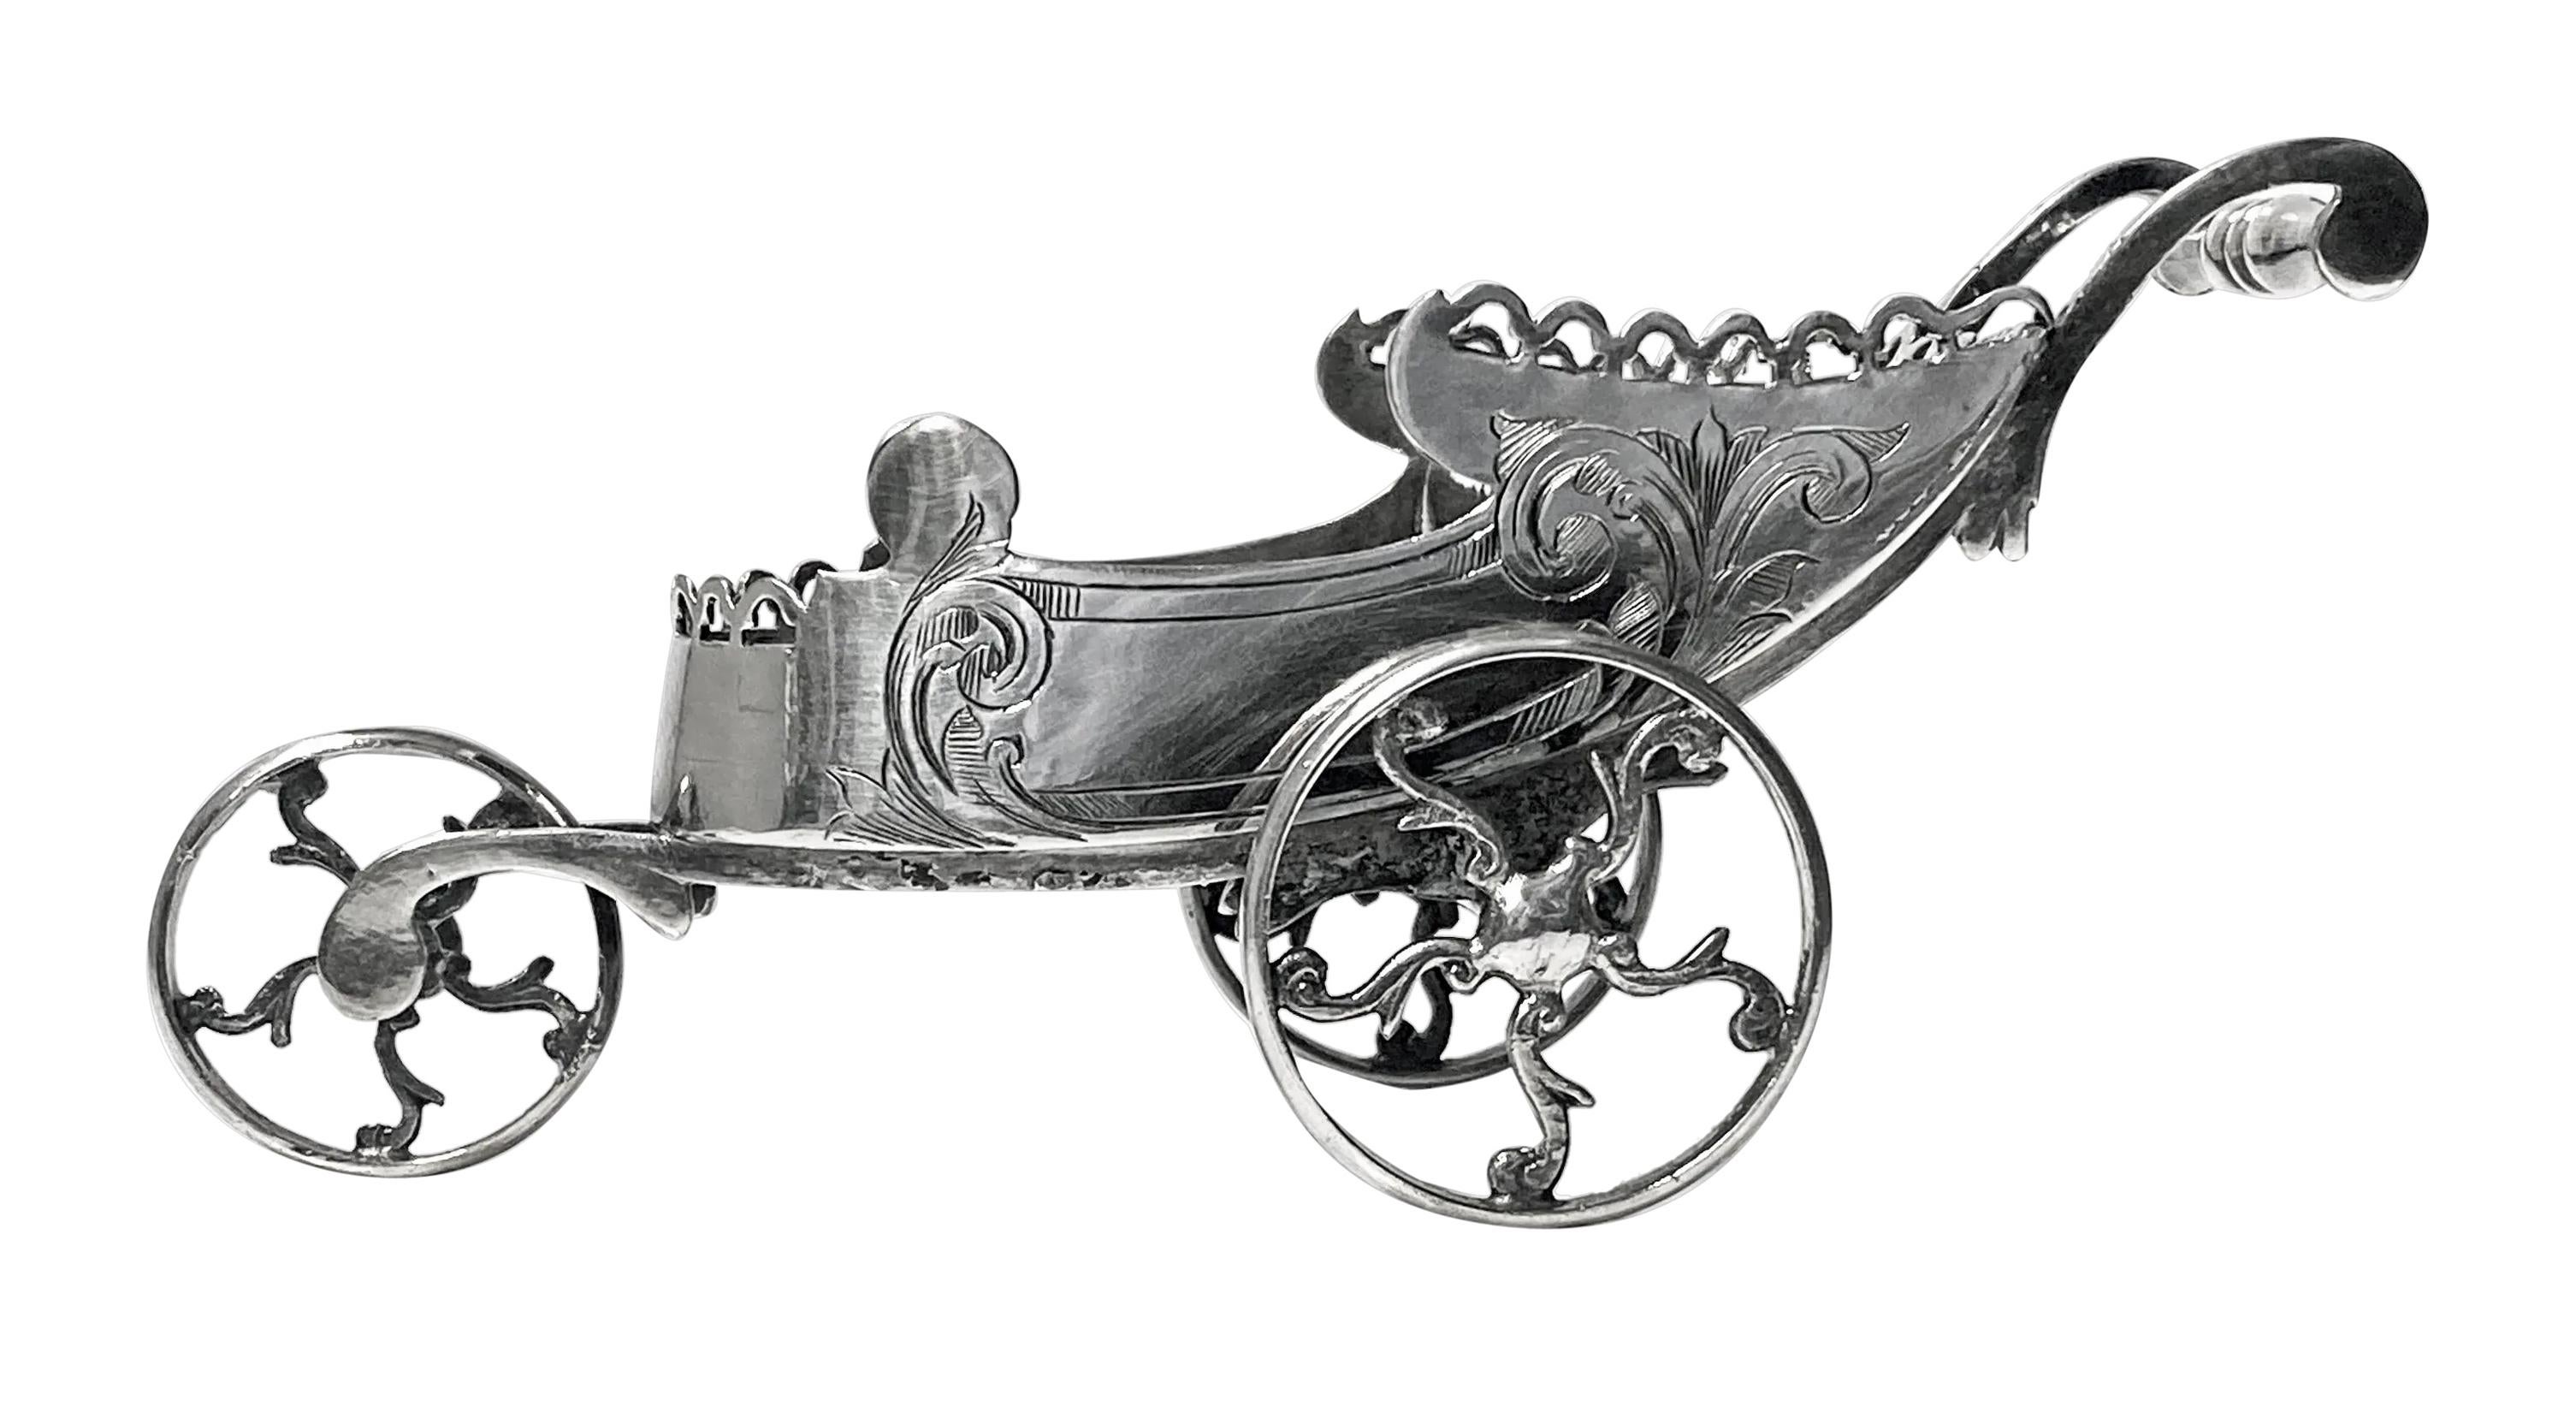 Neuheit Silberplatte Chariot Carriage Continental C.1870. Zusammen mit dem dazugehörigen Löffel kann er für Gewürze oder kleine Minzbonbons etc. verwendet werden. Sehr aufwendig gearbeitet mit durchbrochener Frieseinfassung und handgraviertem Dekor.